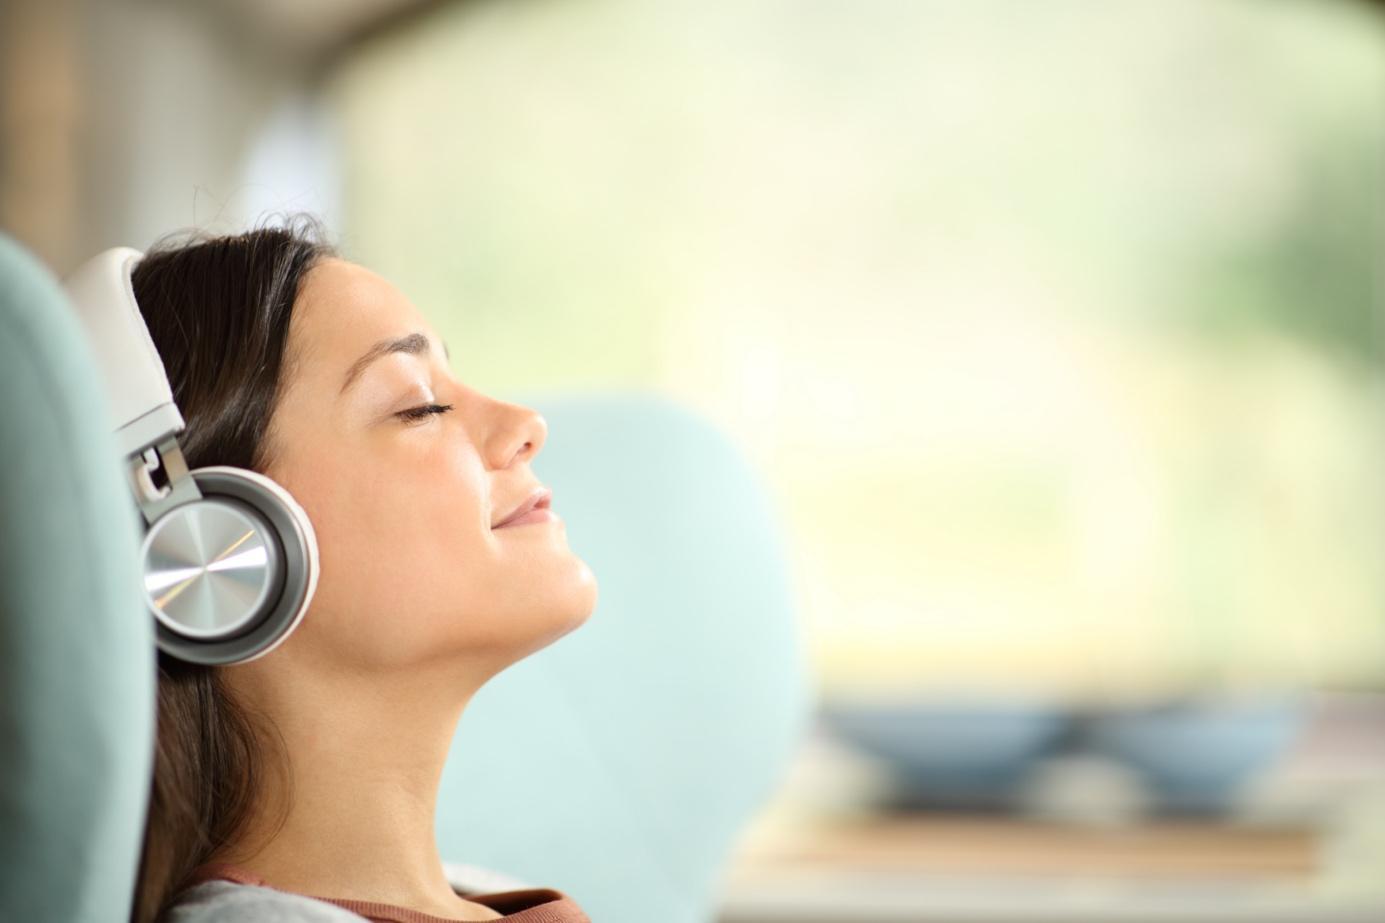 Eine Frau entspannt sich mit geschlossenen Augen in einem hellblauen Stuhl, während sie Musik über Kopfhörer hört